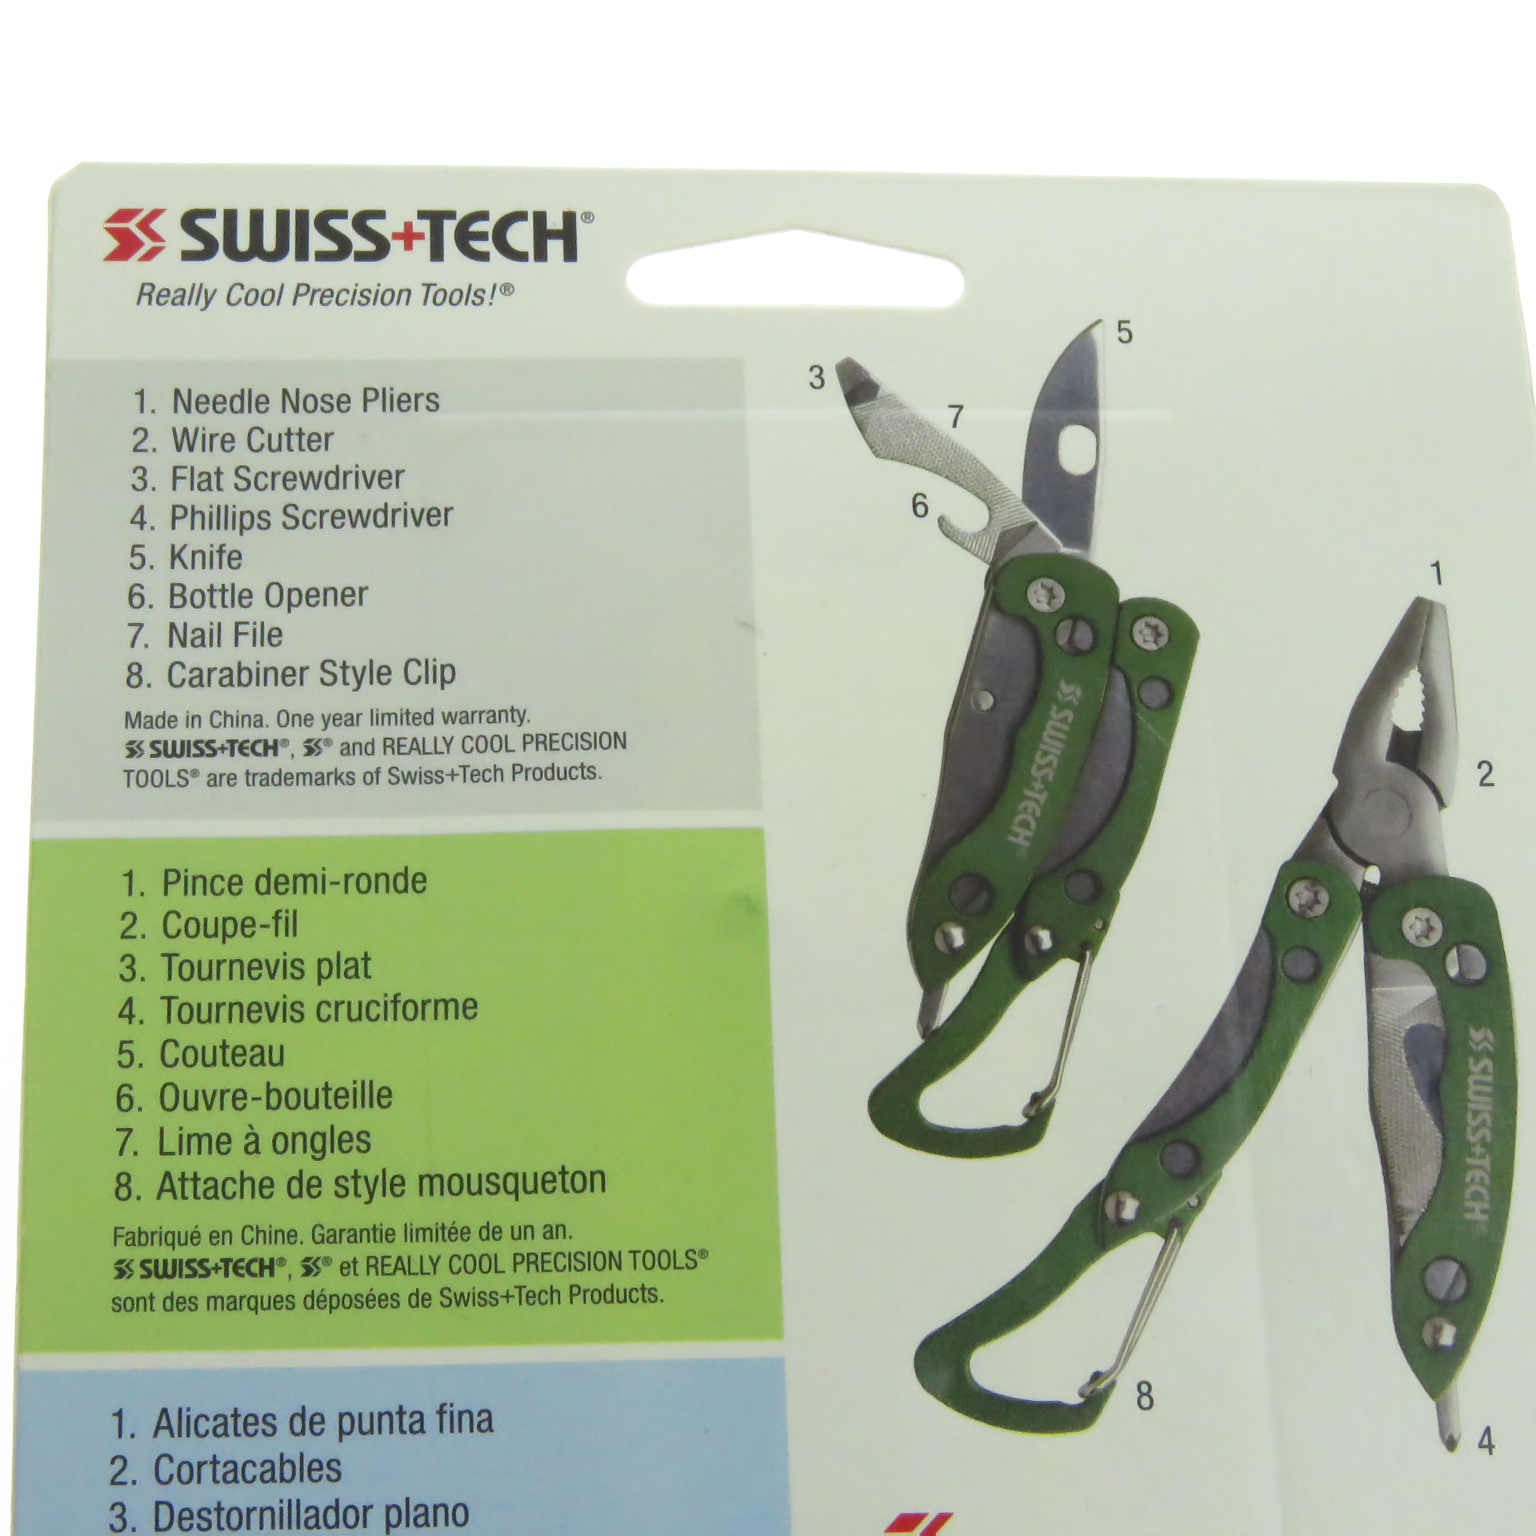 Llavero multi-herramientas Swiss Tech en plata 7 en 1 con linterna